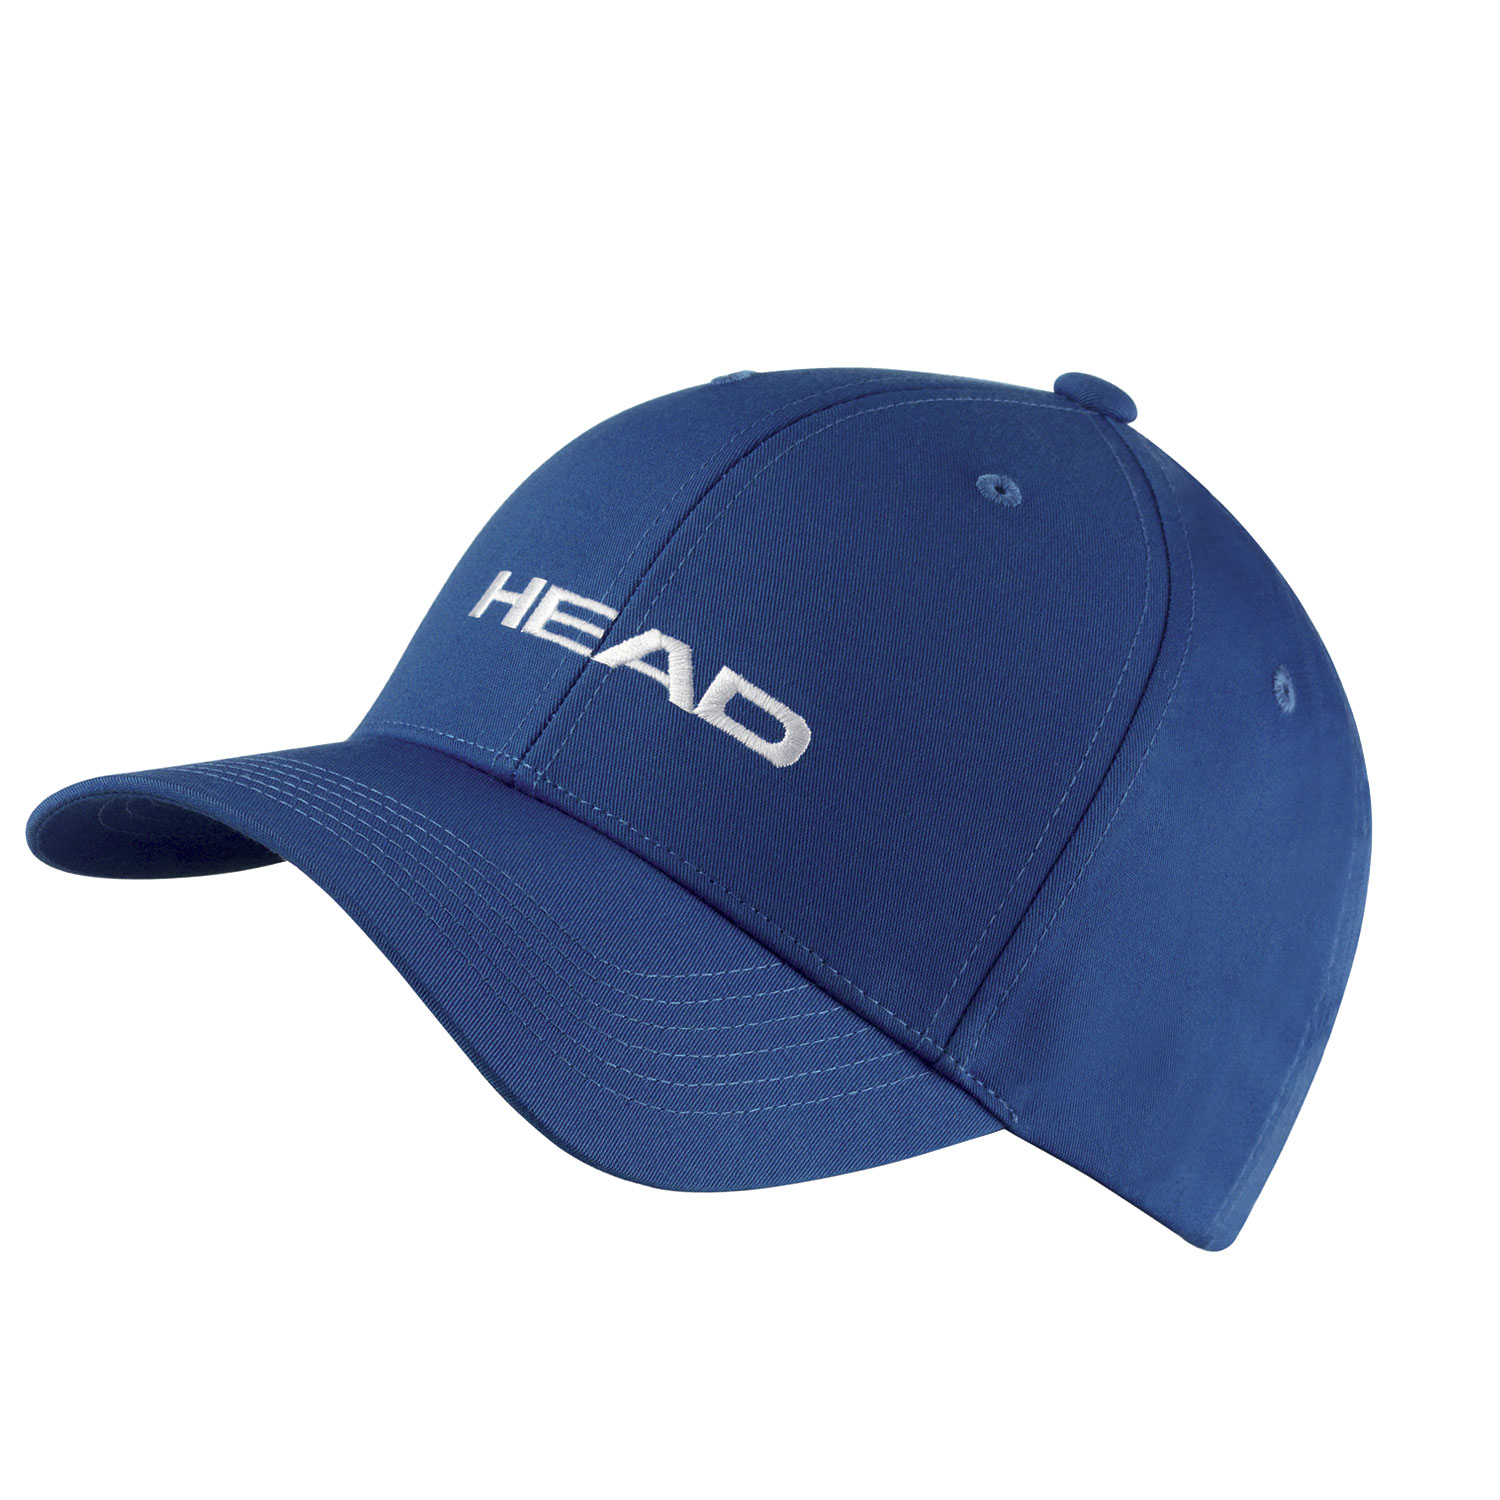 Head Promotion Cap - Blue